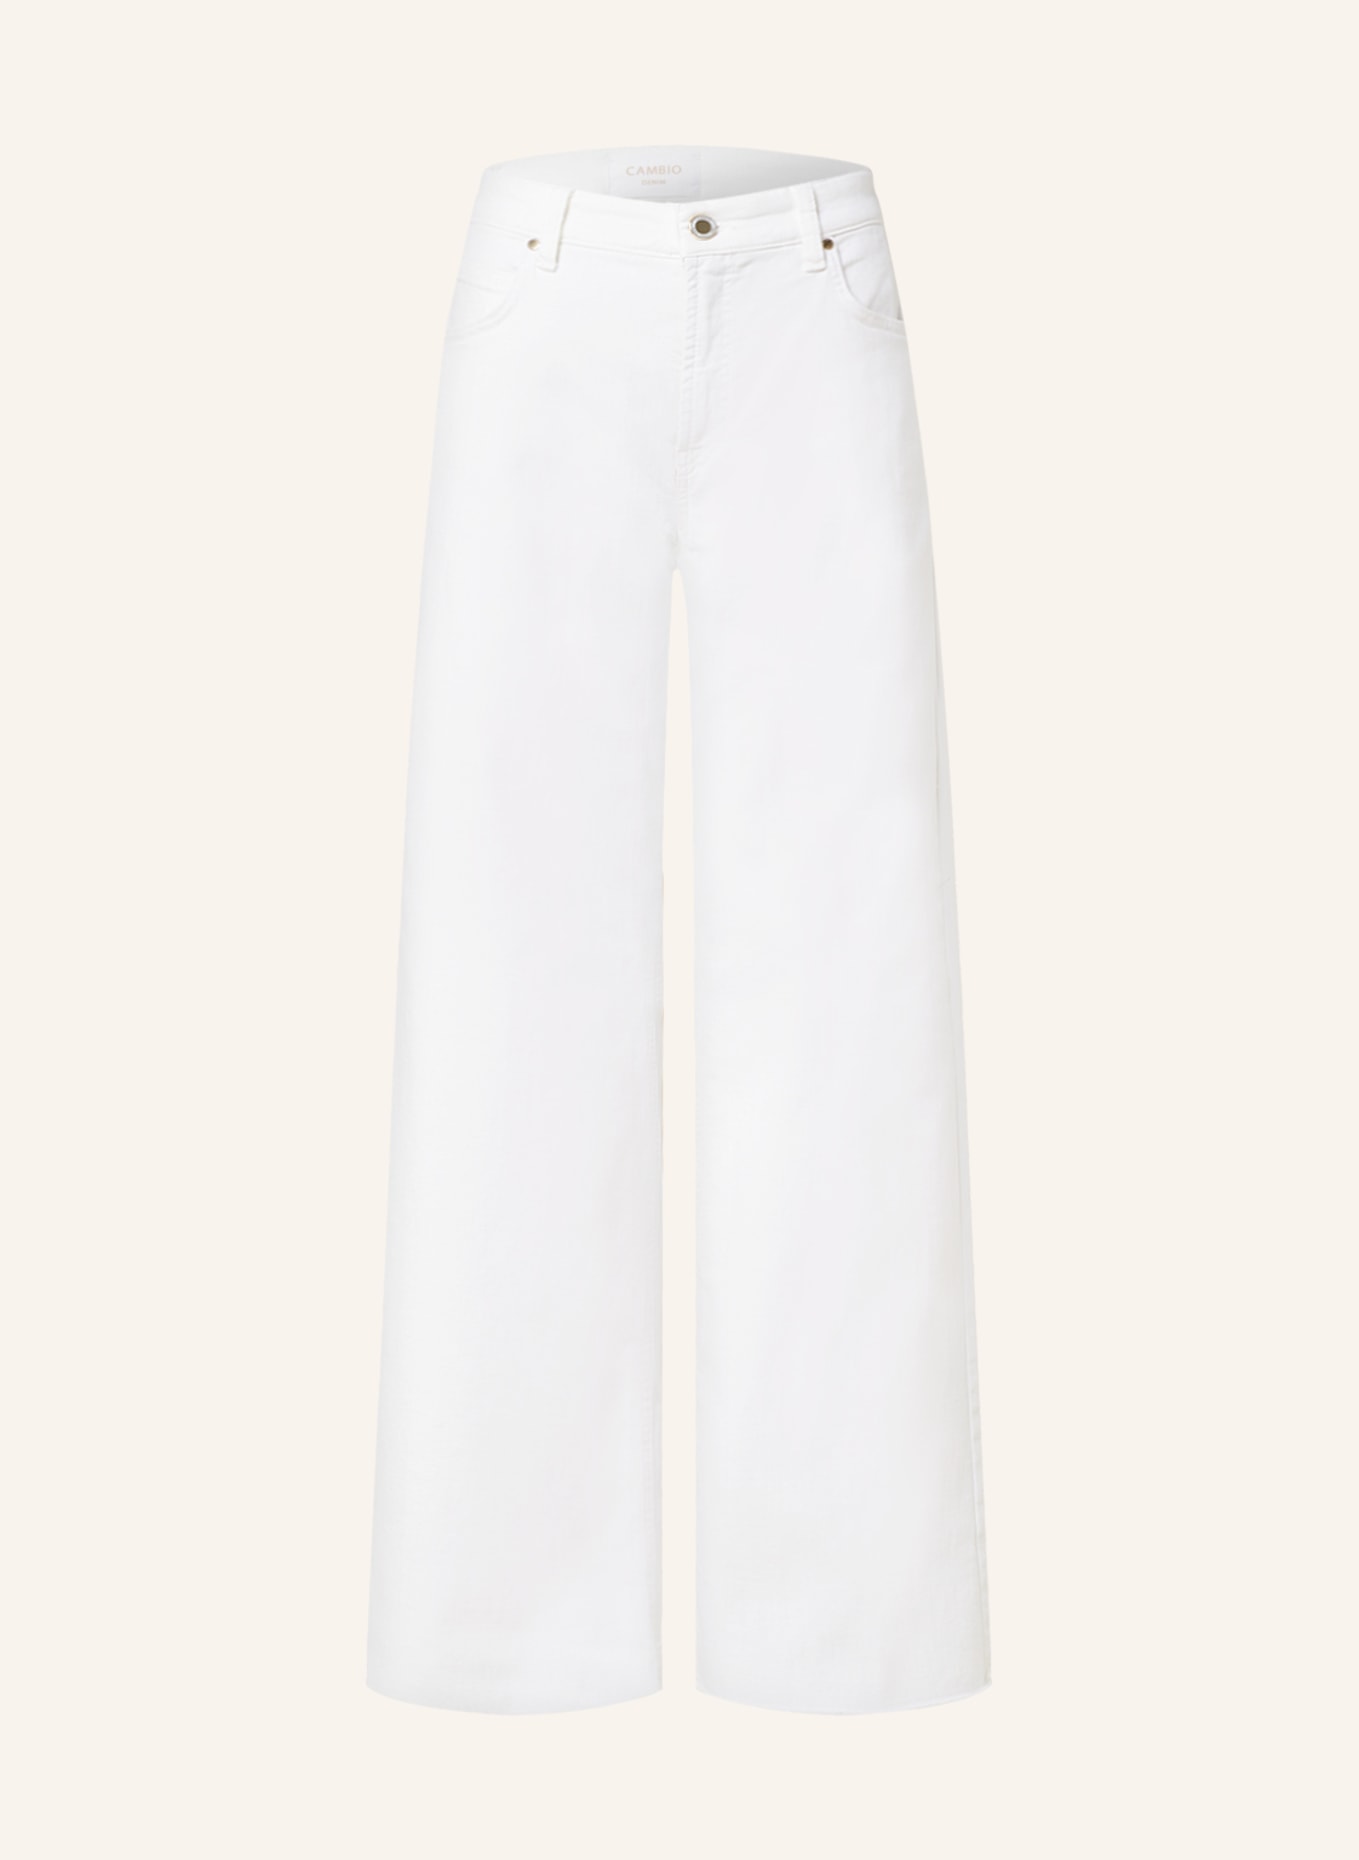 CAMBIO Flared Jeans PALAZZO, Farbe: 5116 pure white stone & fringe (Bild 1)